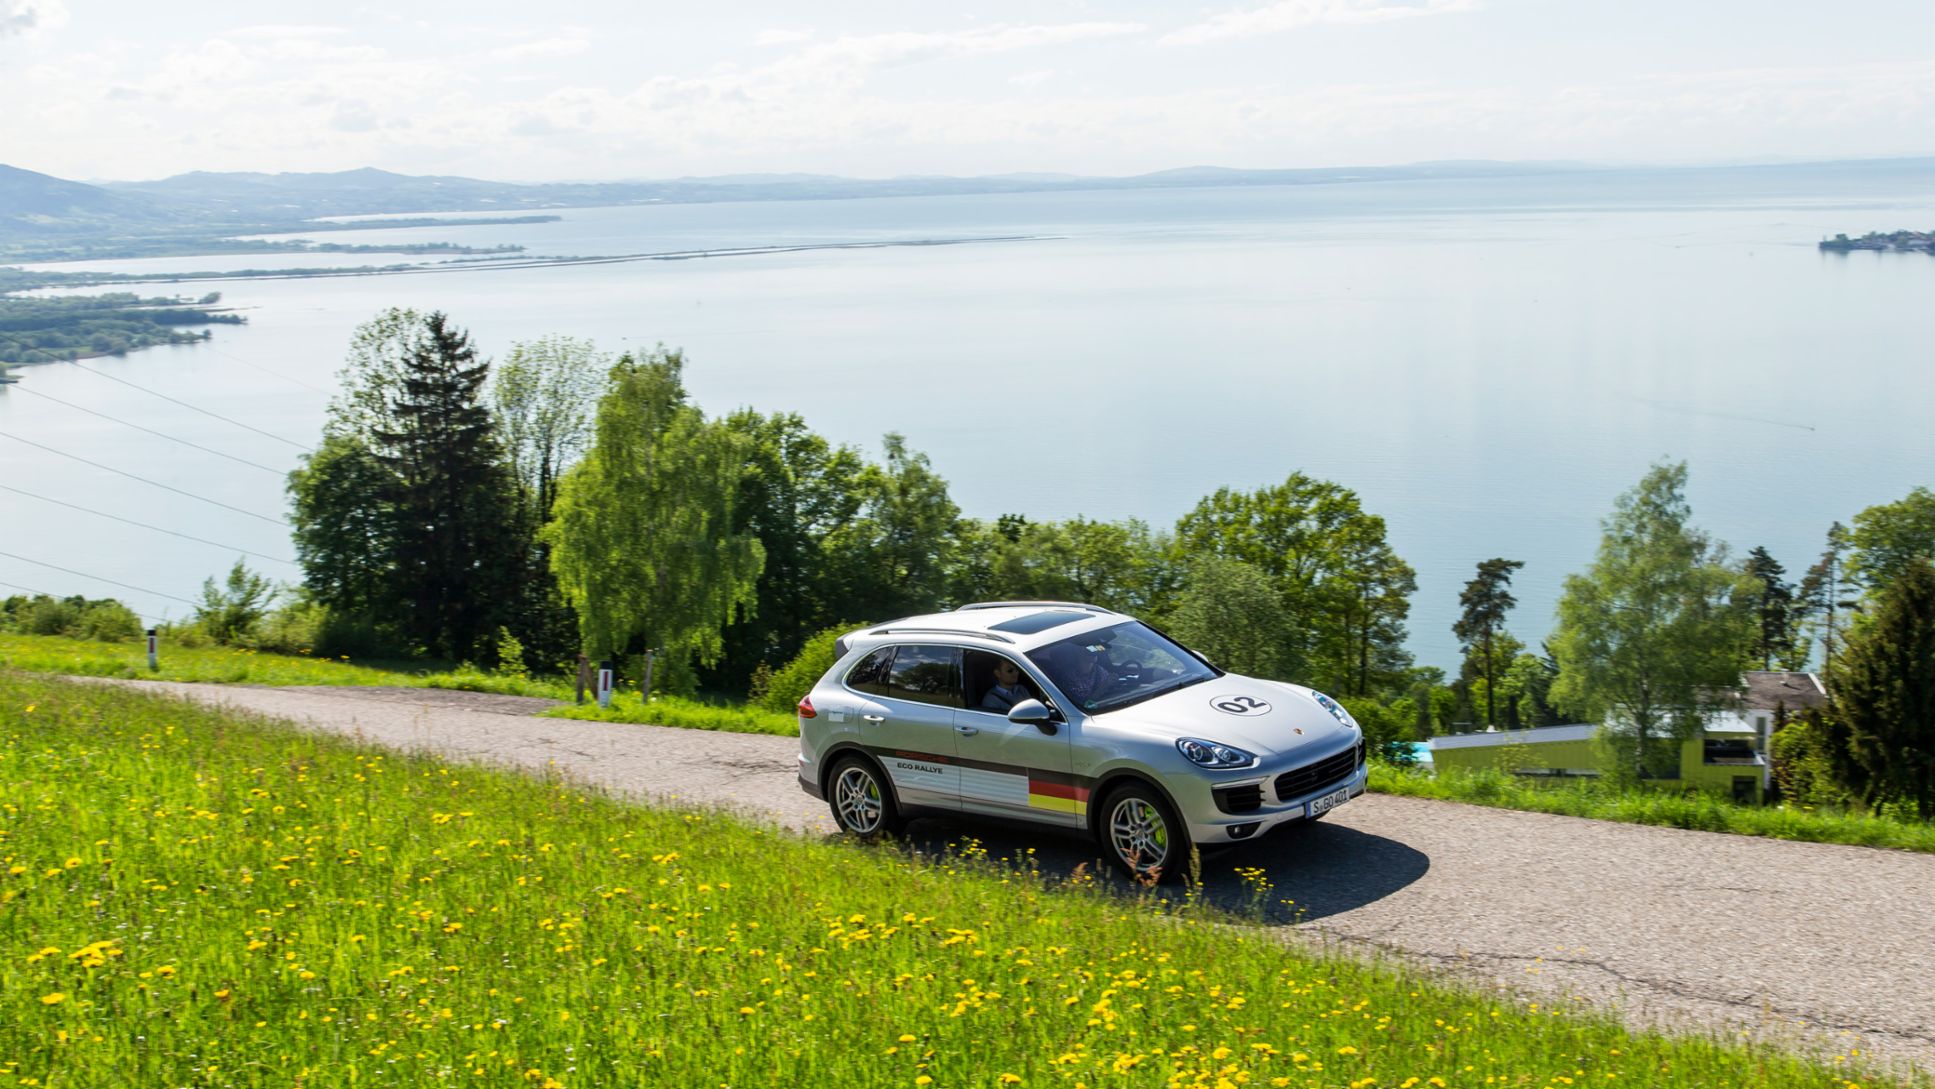 Cayenne S E-Hybrid, Eco Rallye Lake Constance, 2015, Porsche AG